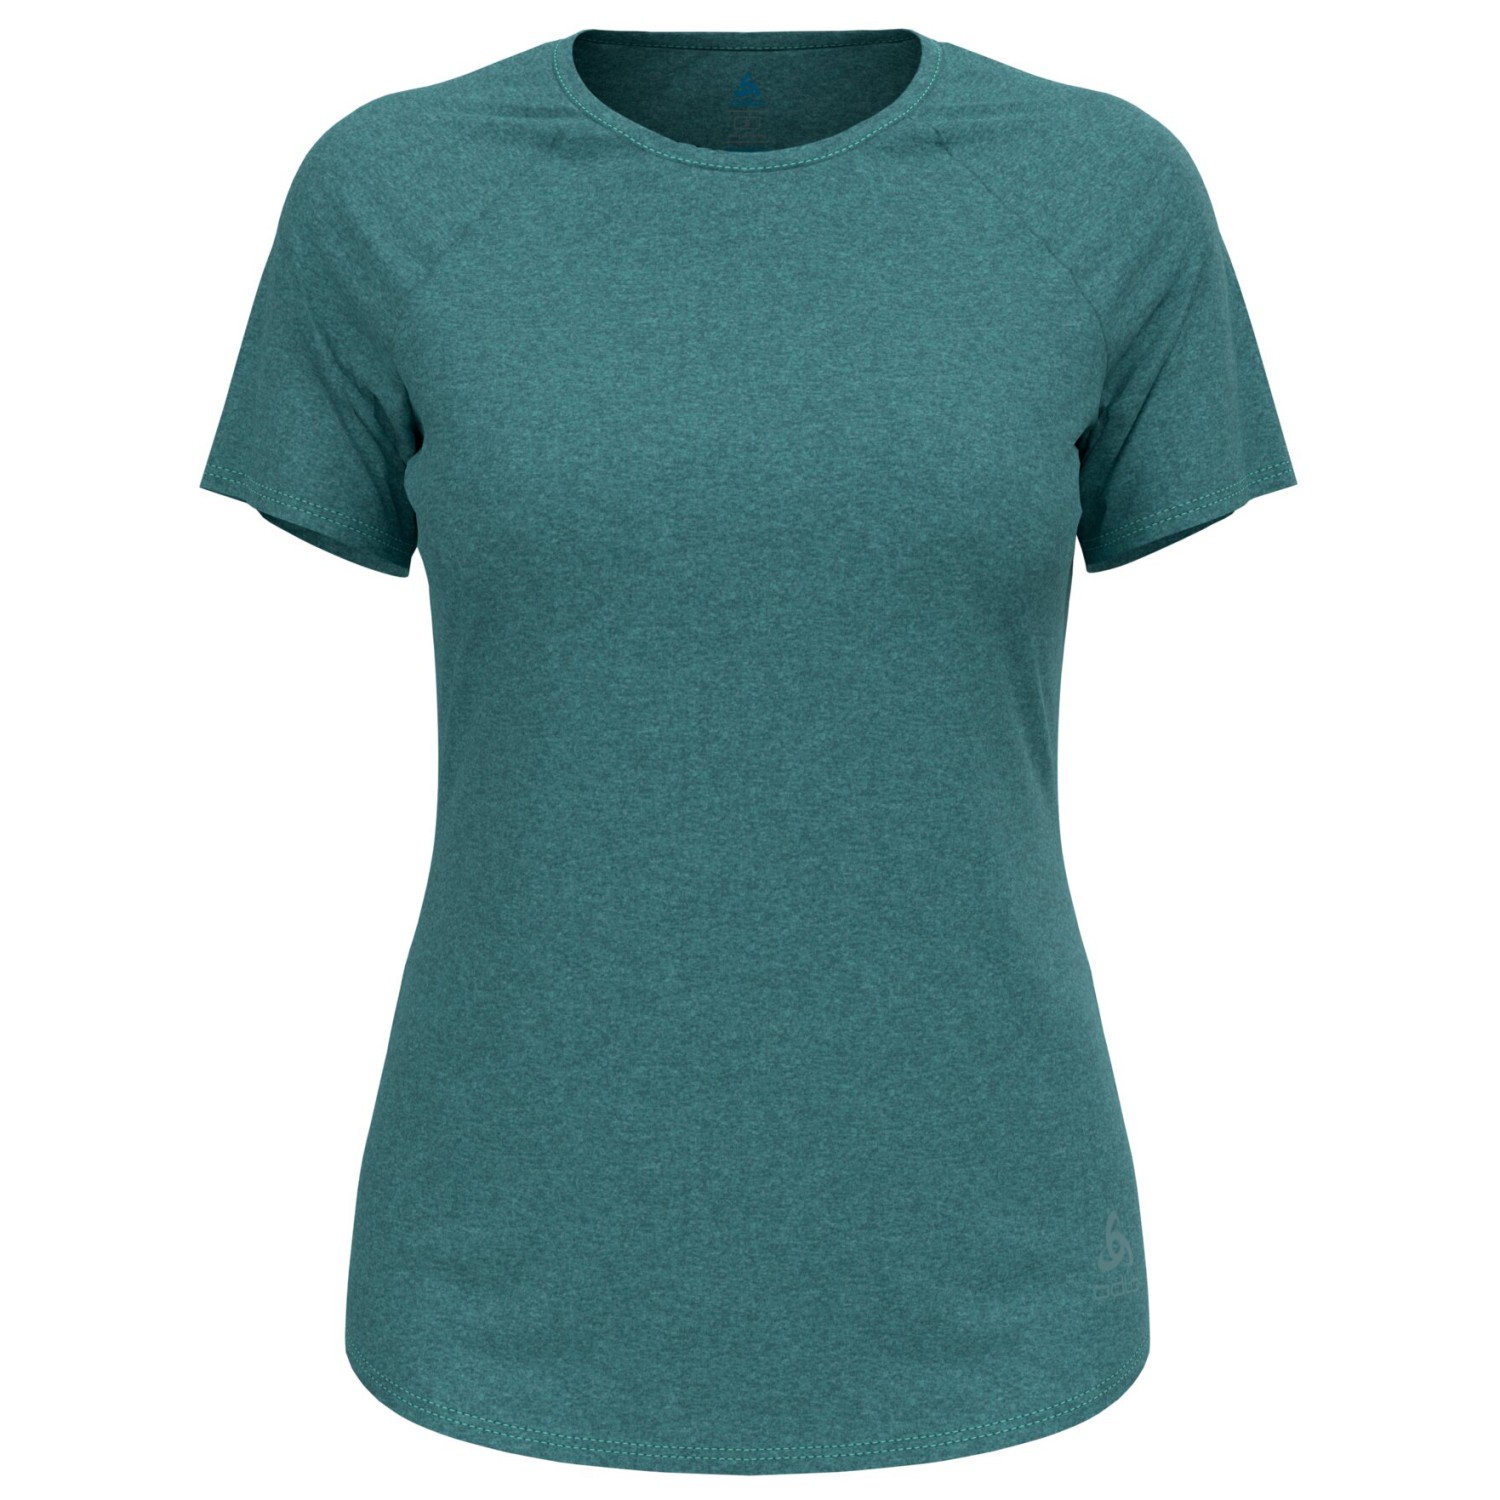 Беговая рубашка Odlo Women's T Shirt Crew Neck S/S Essential 365, цвет Arctic Melange